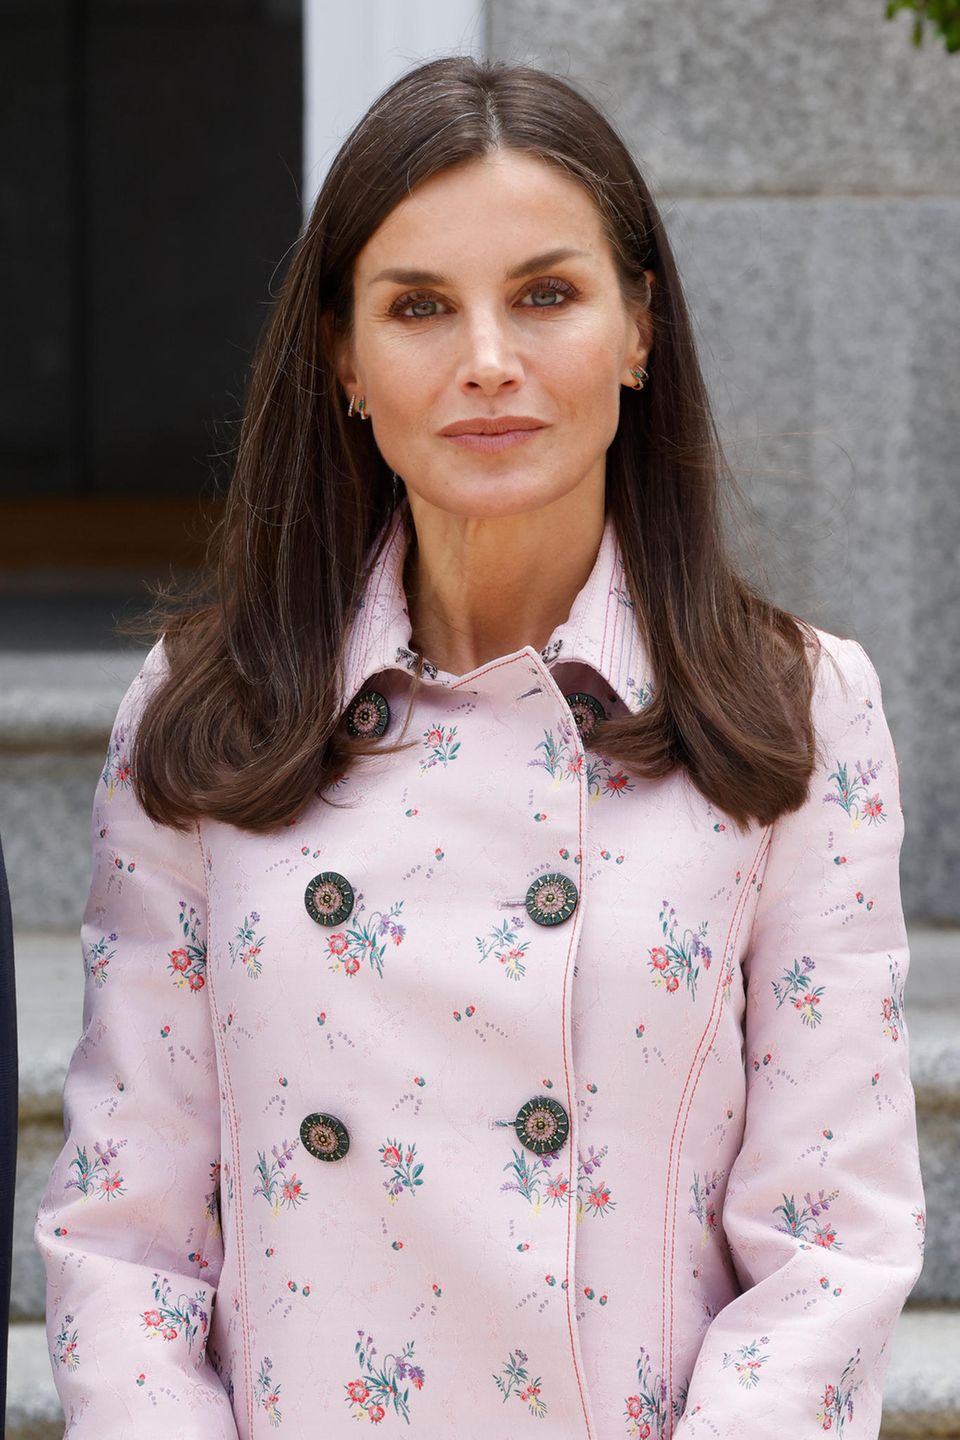 Endlich wieder ohne Maske! Am 28. April 2022 zeigt die Königin von Spanien sich vor dem Mittagessen im Zarzuela-Palast. Ihre Haare sitzen genauso wie üblich und sie scheint keinen Monat älter zu werden. 